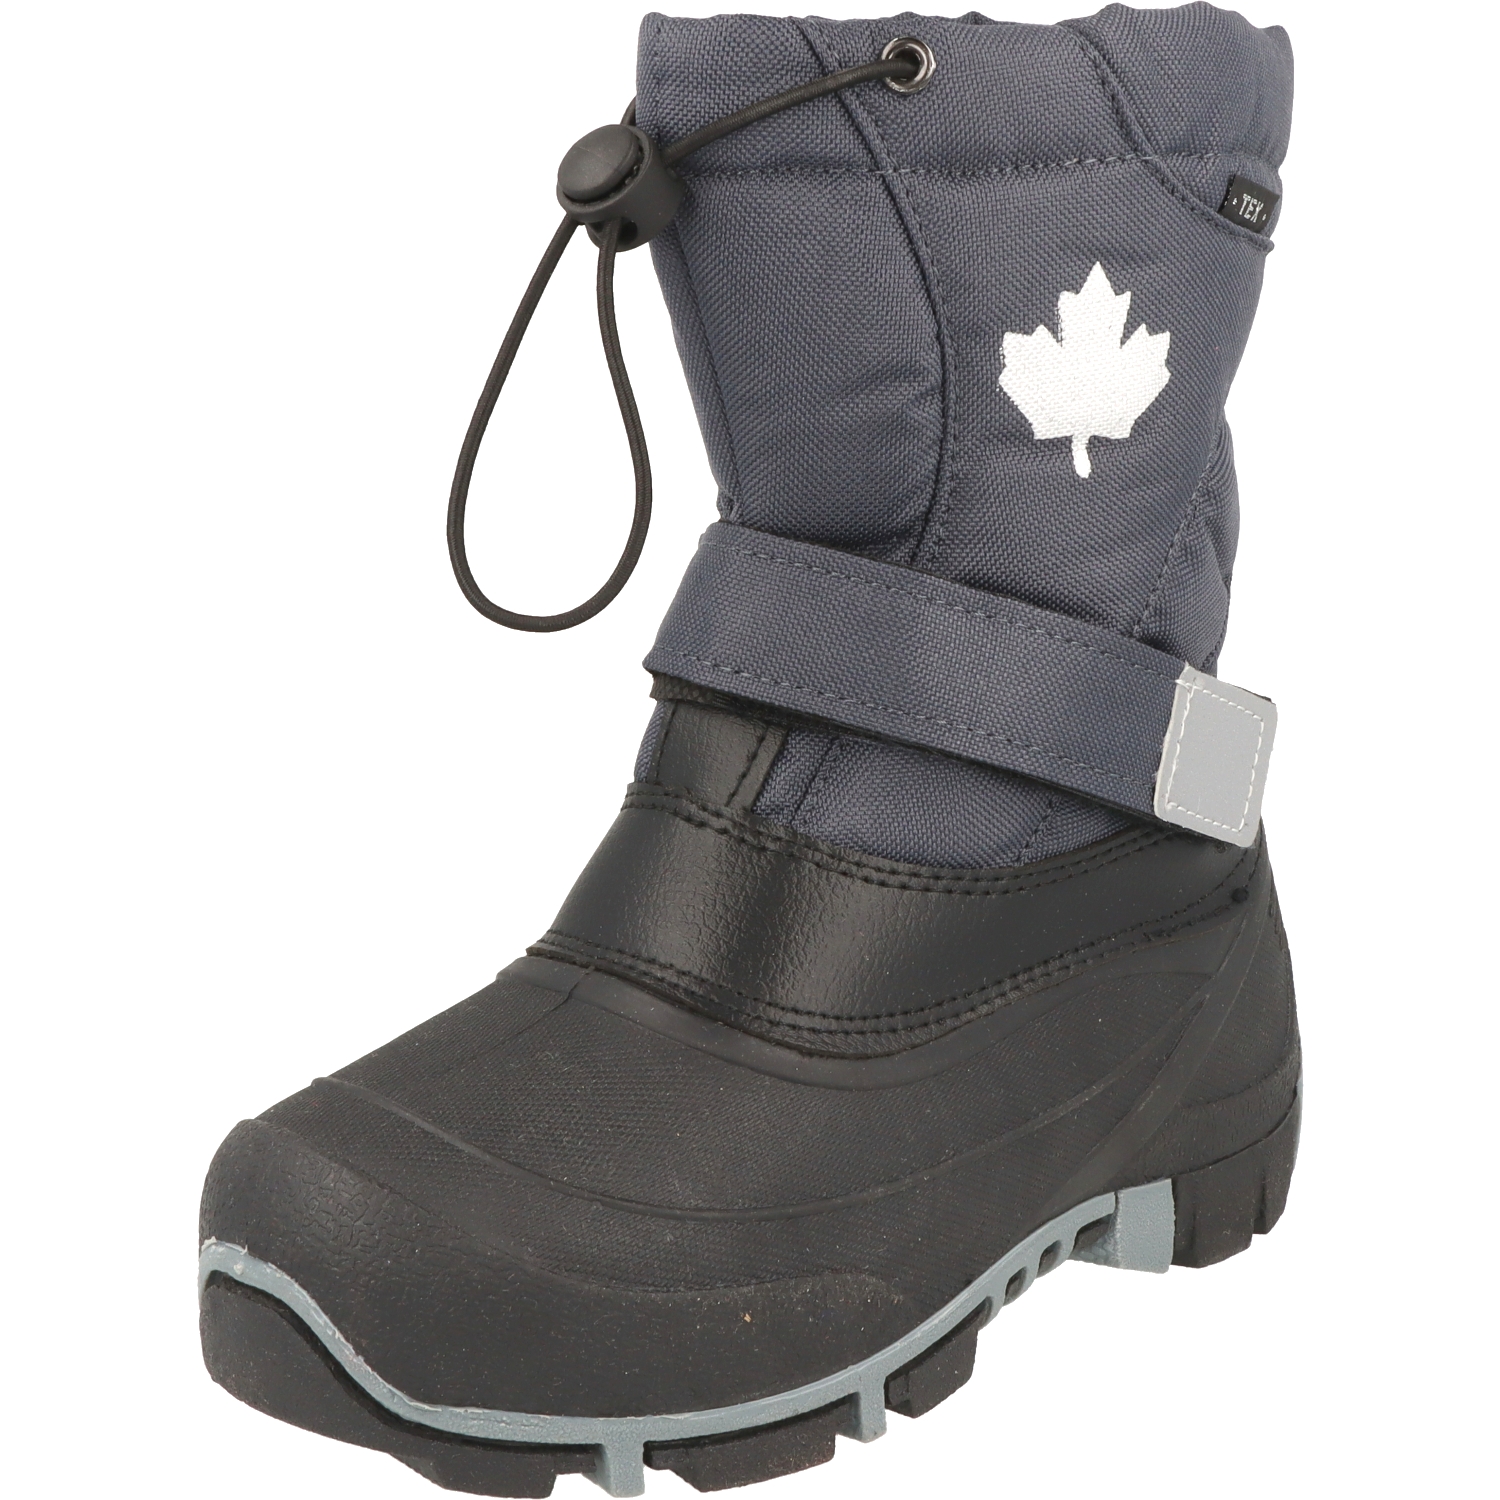 Indigo Canadians 467-185 Kinder Winter Stiefel Snow Boots TEX Schnee dk.grey